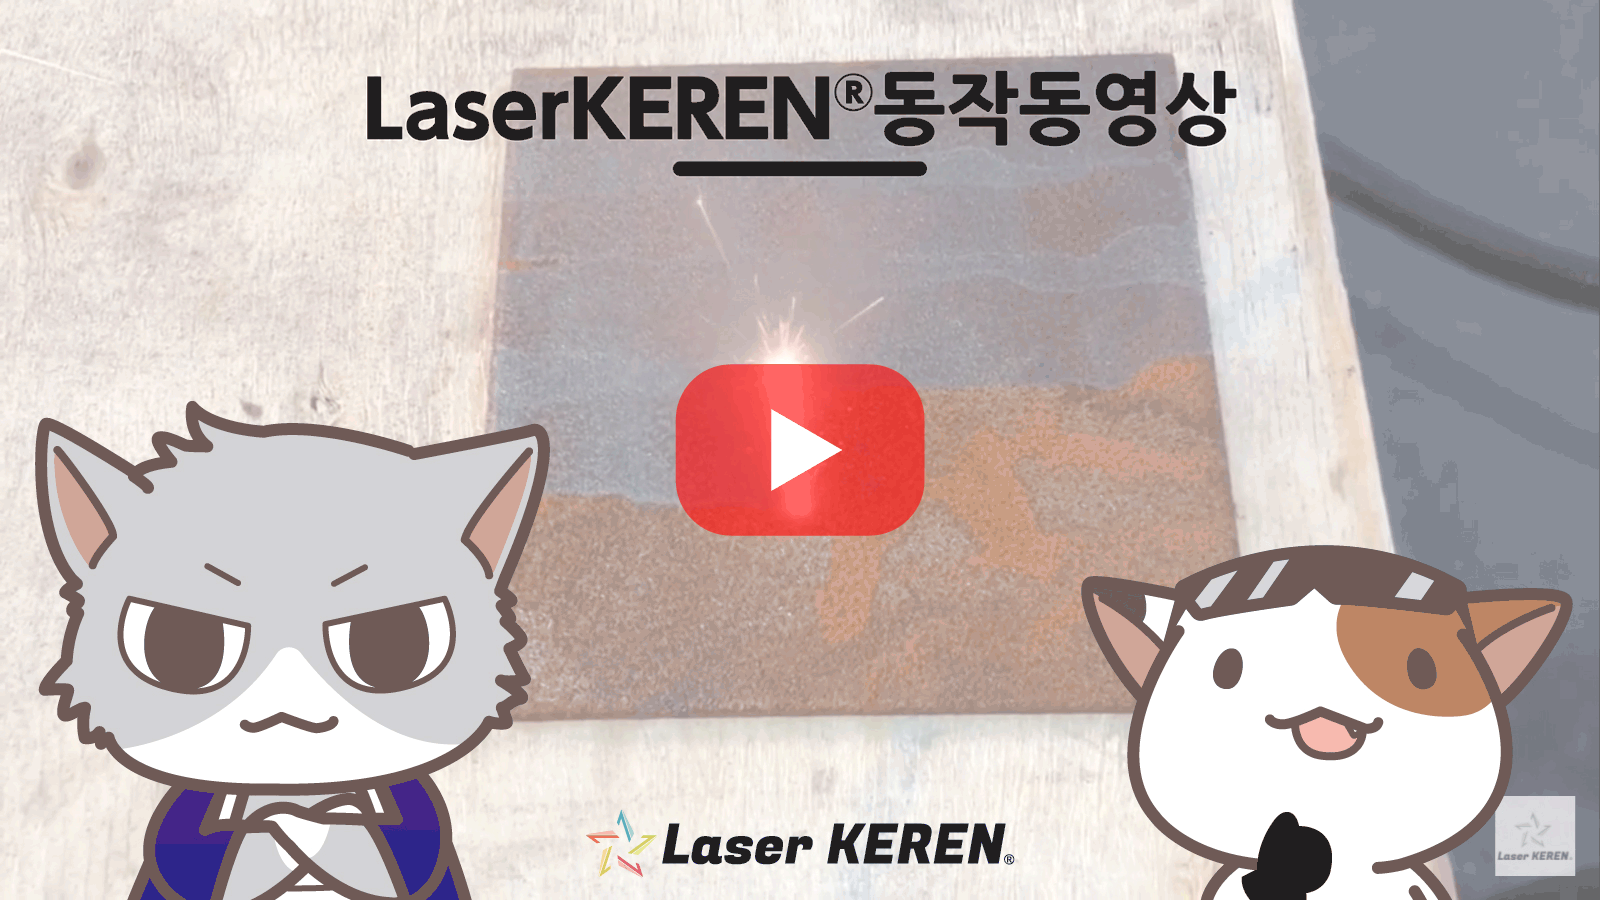 Strippedby light Laser Keren®